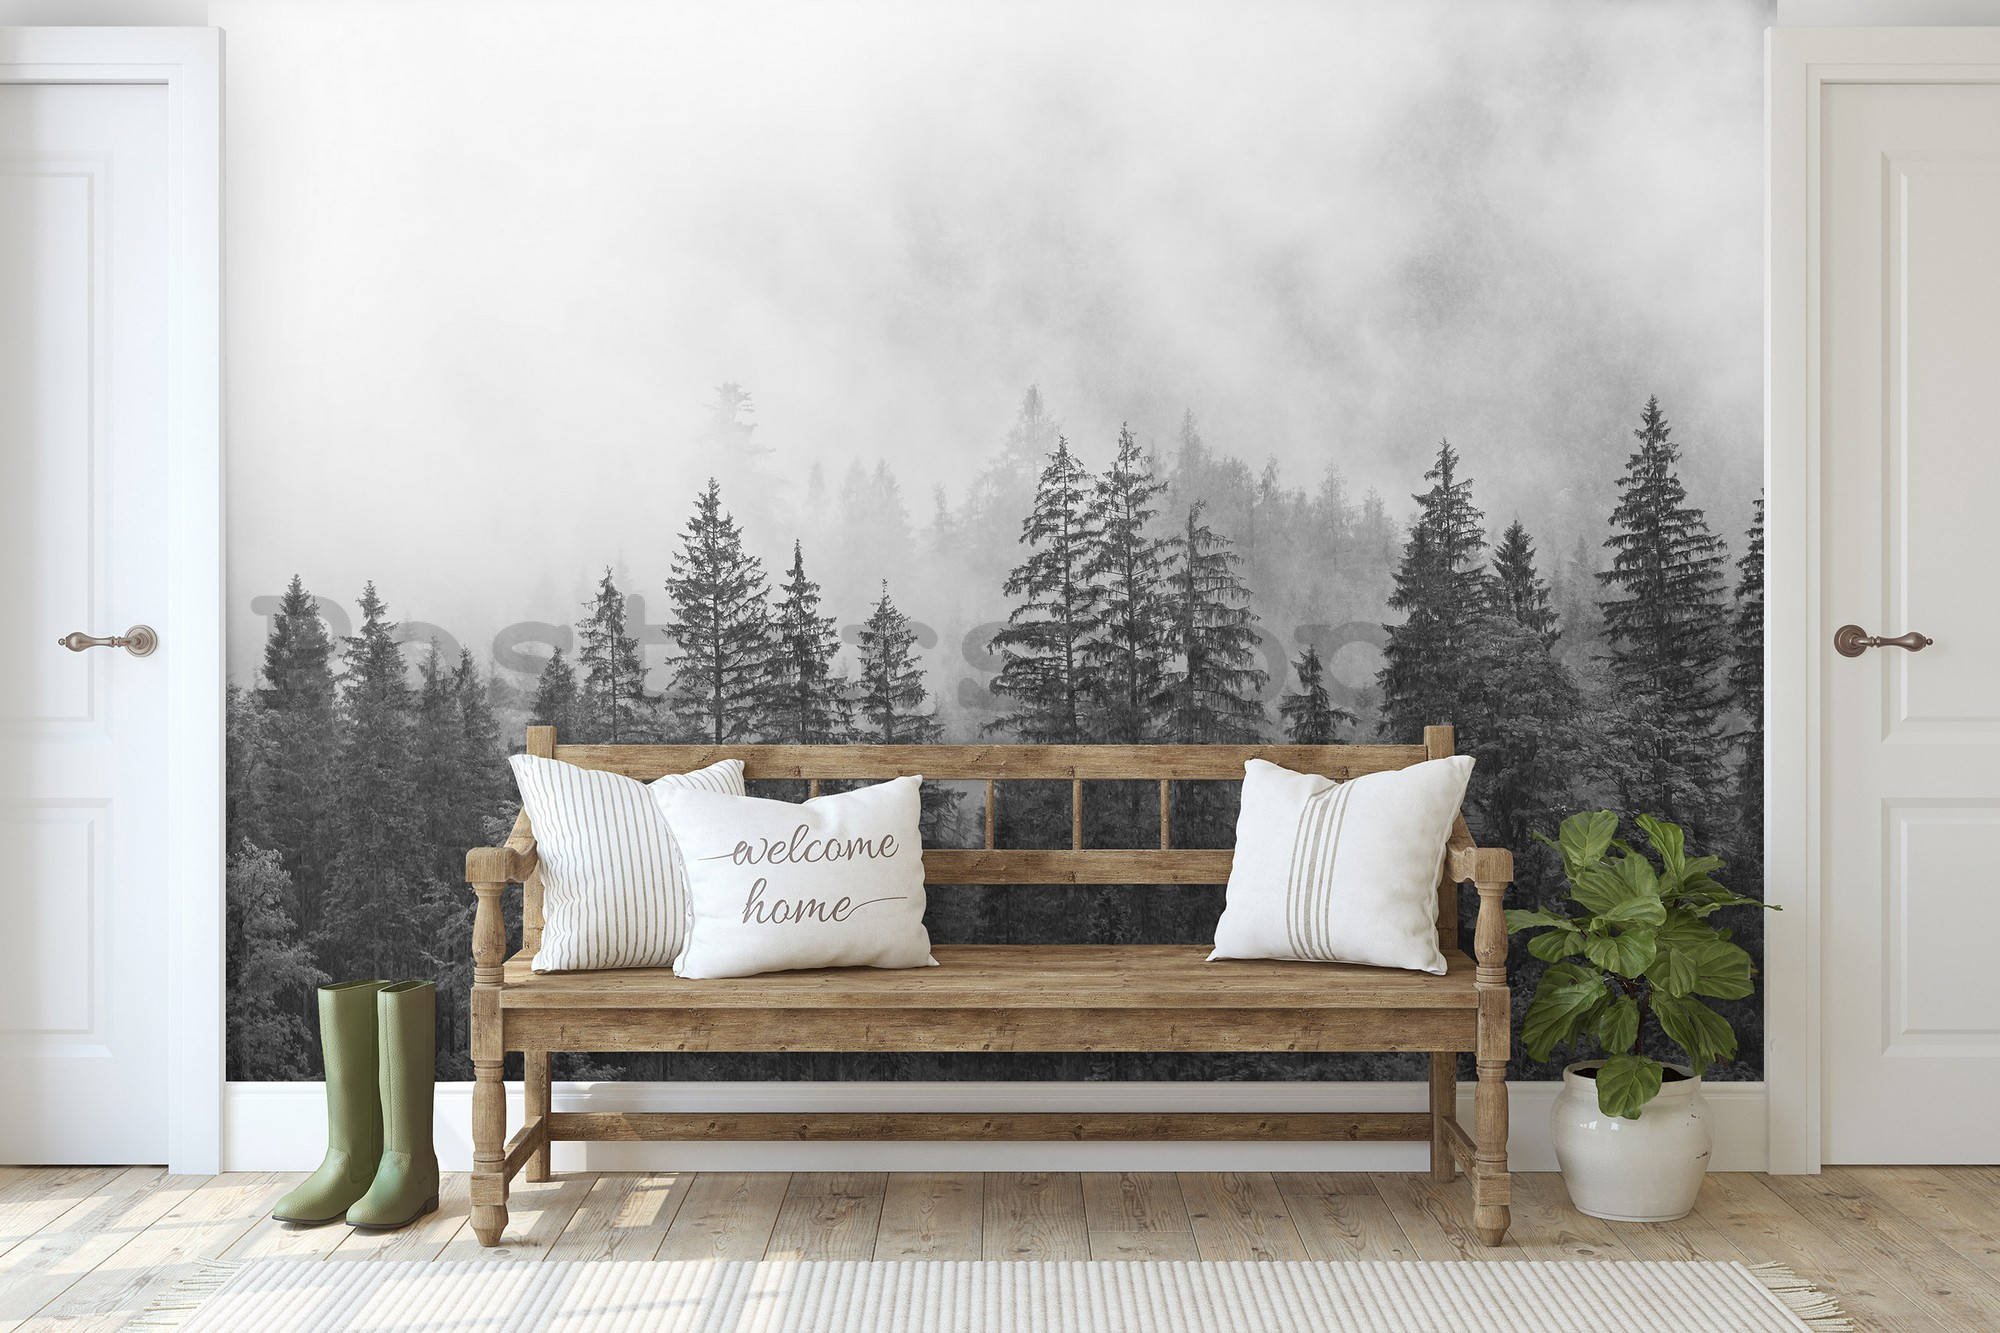 Fototapeta vliesová: Mlha nad černobílým lesem - 254x184 cm